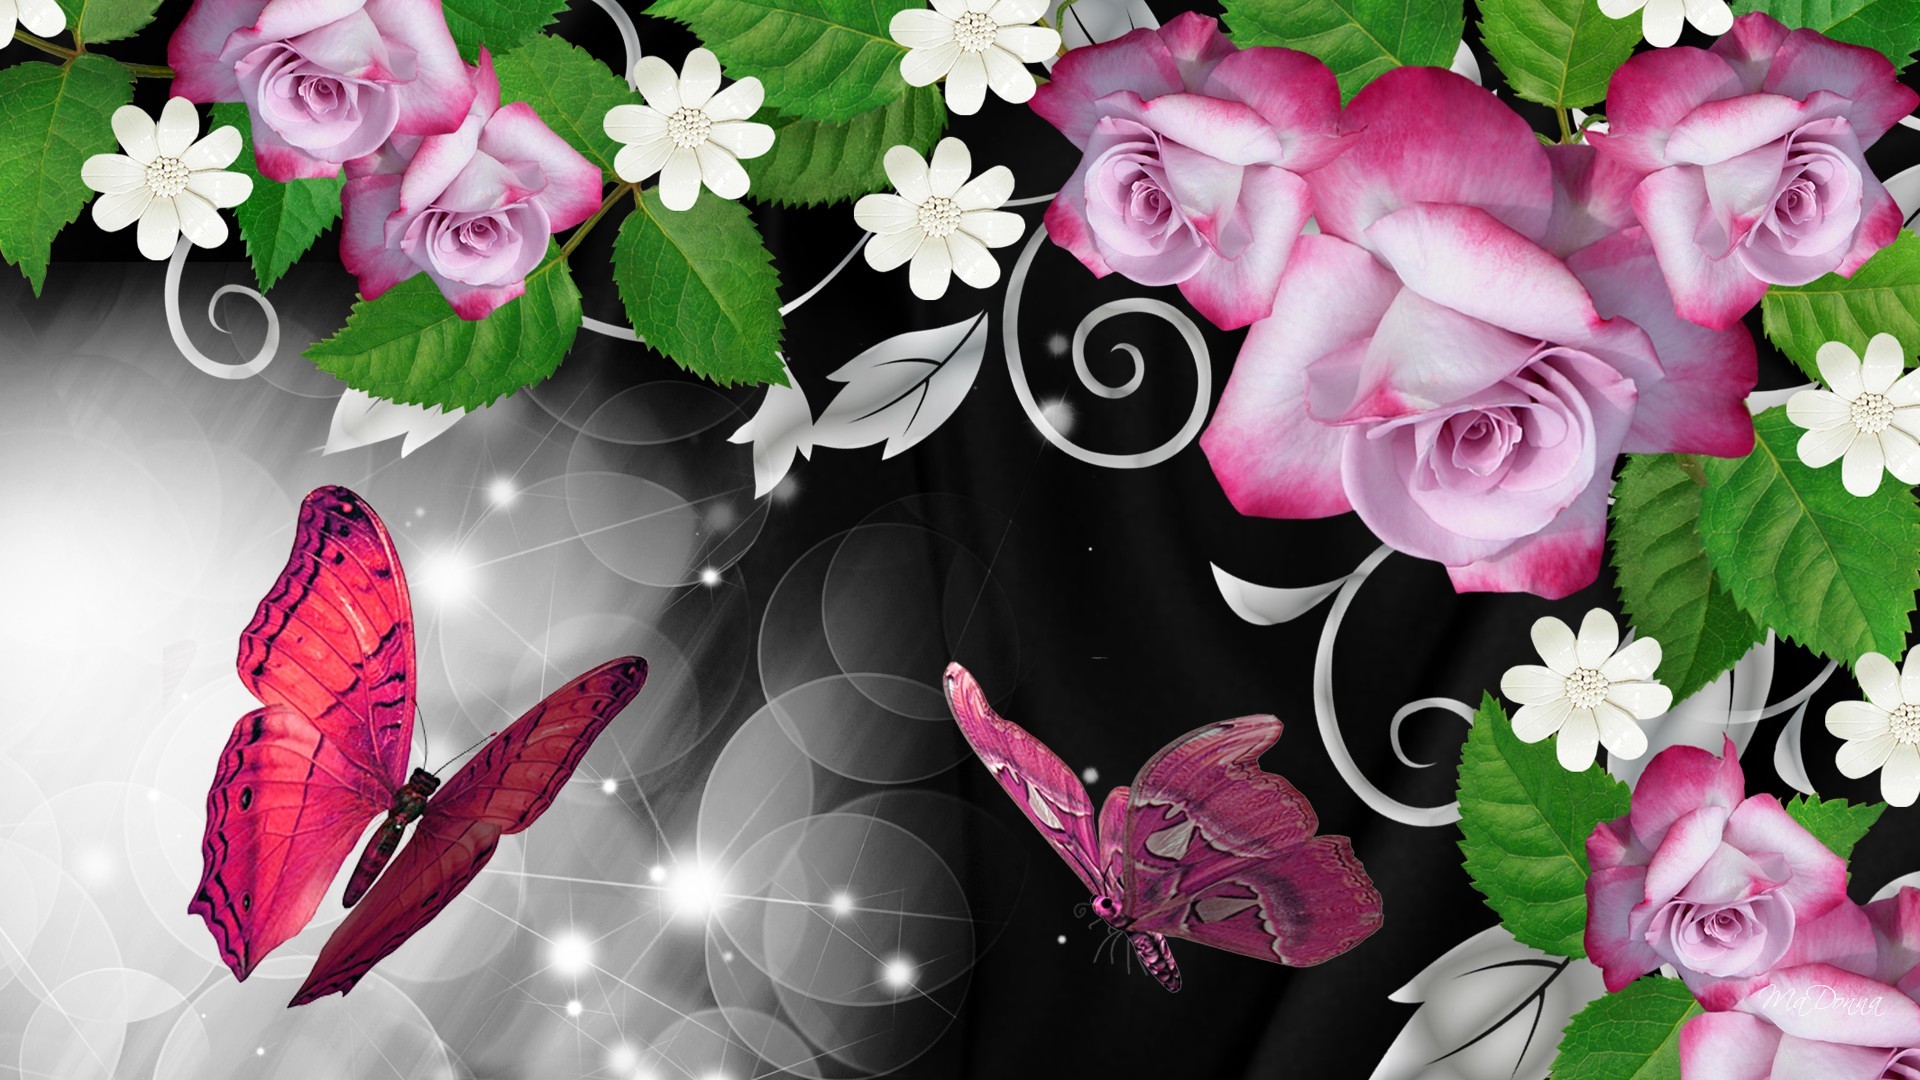 1920x1080 Butterflies and Roses Wallpaper - WallpaperSafari